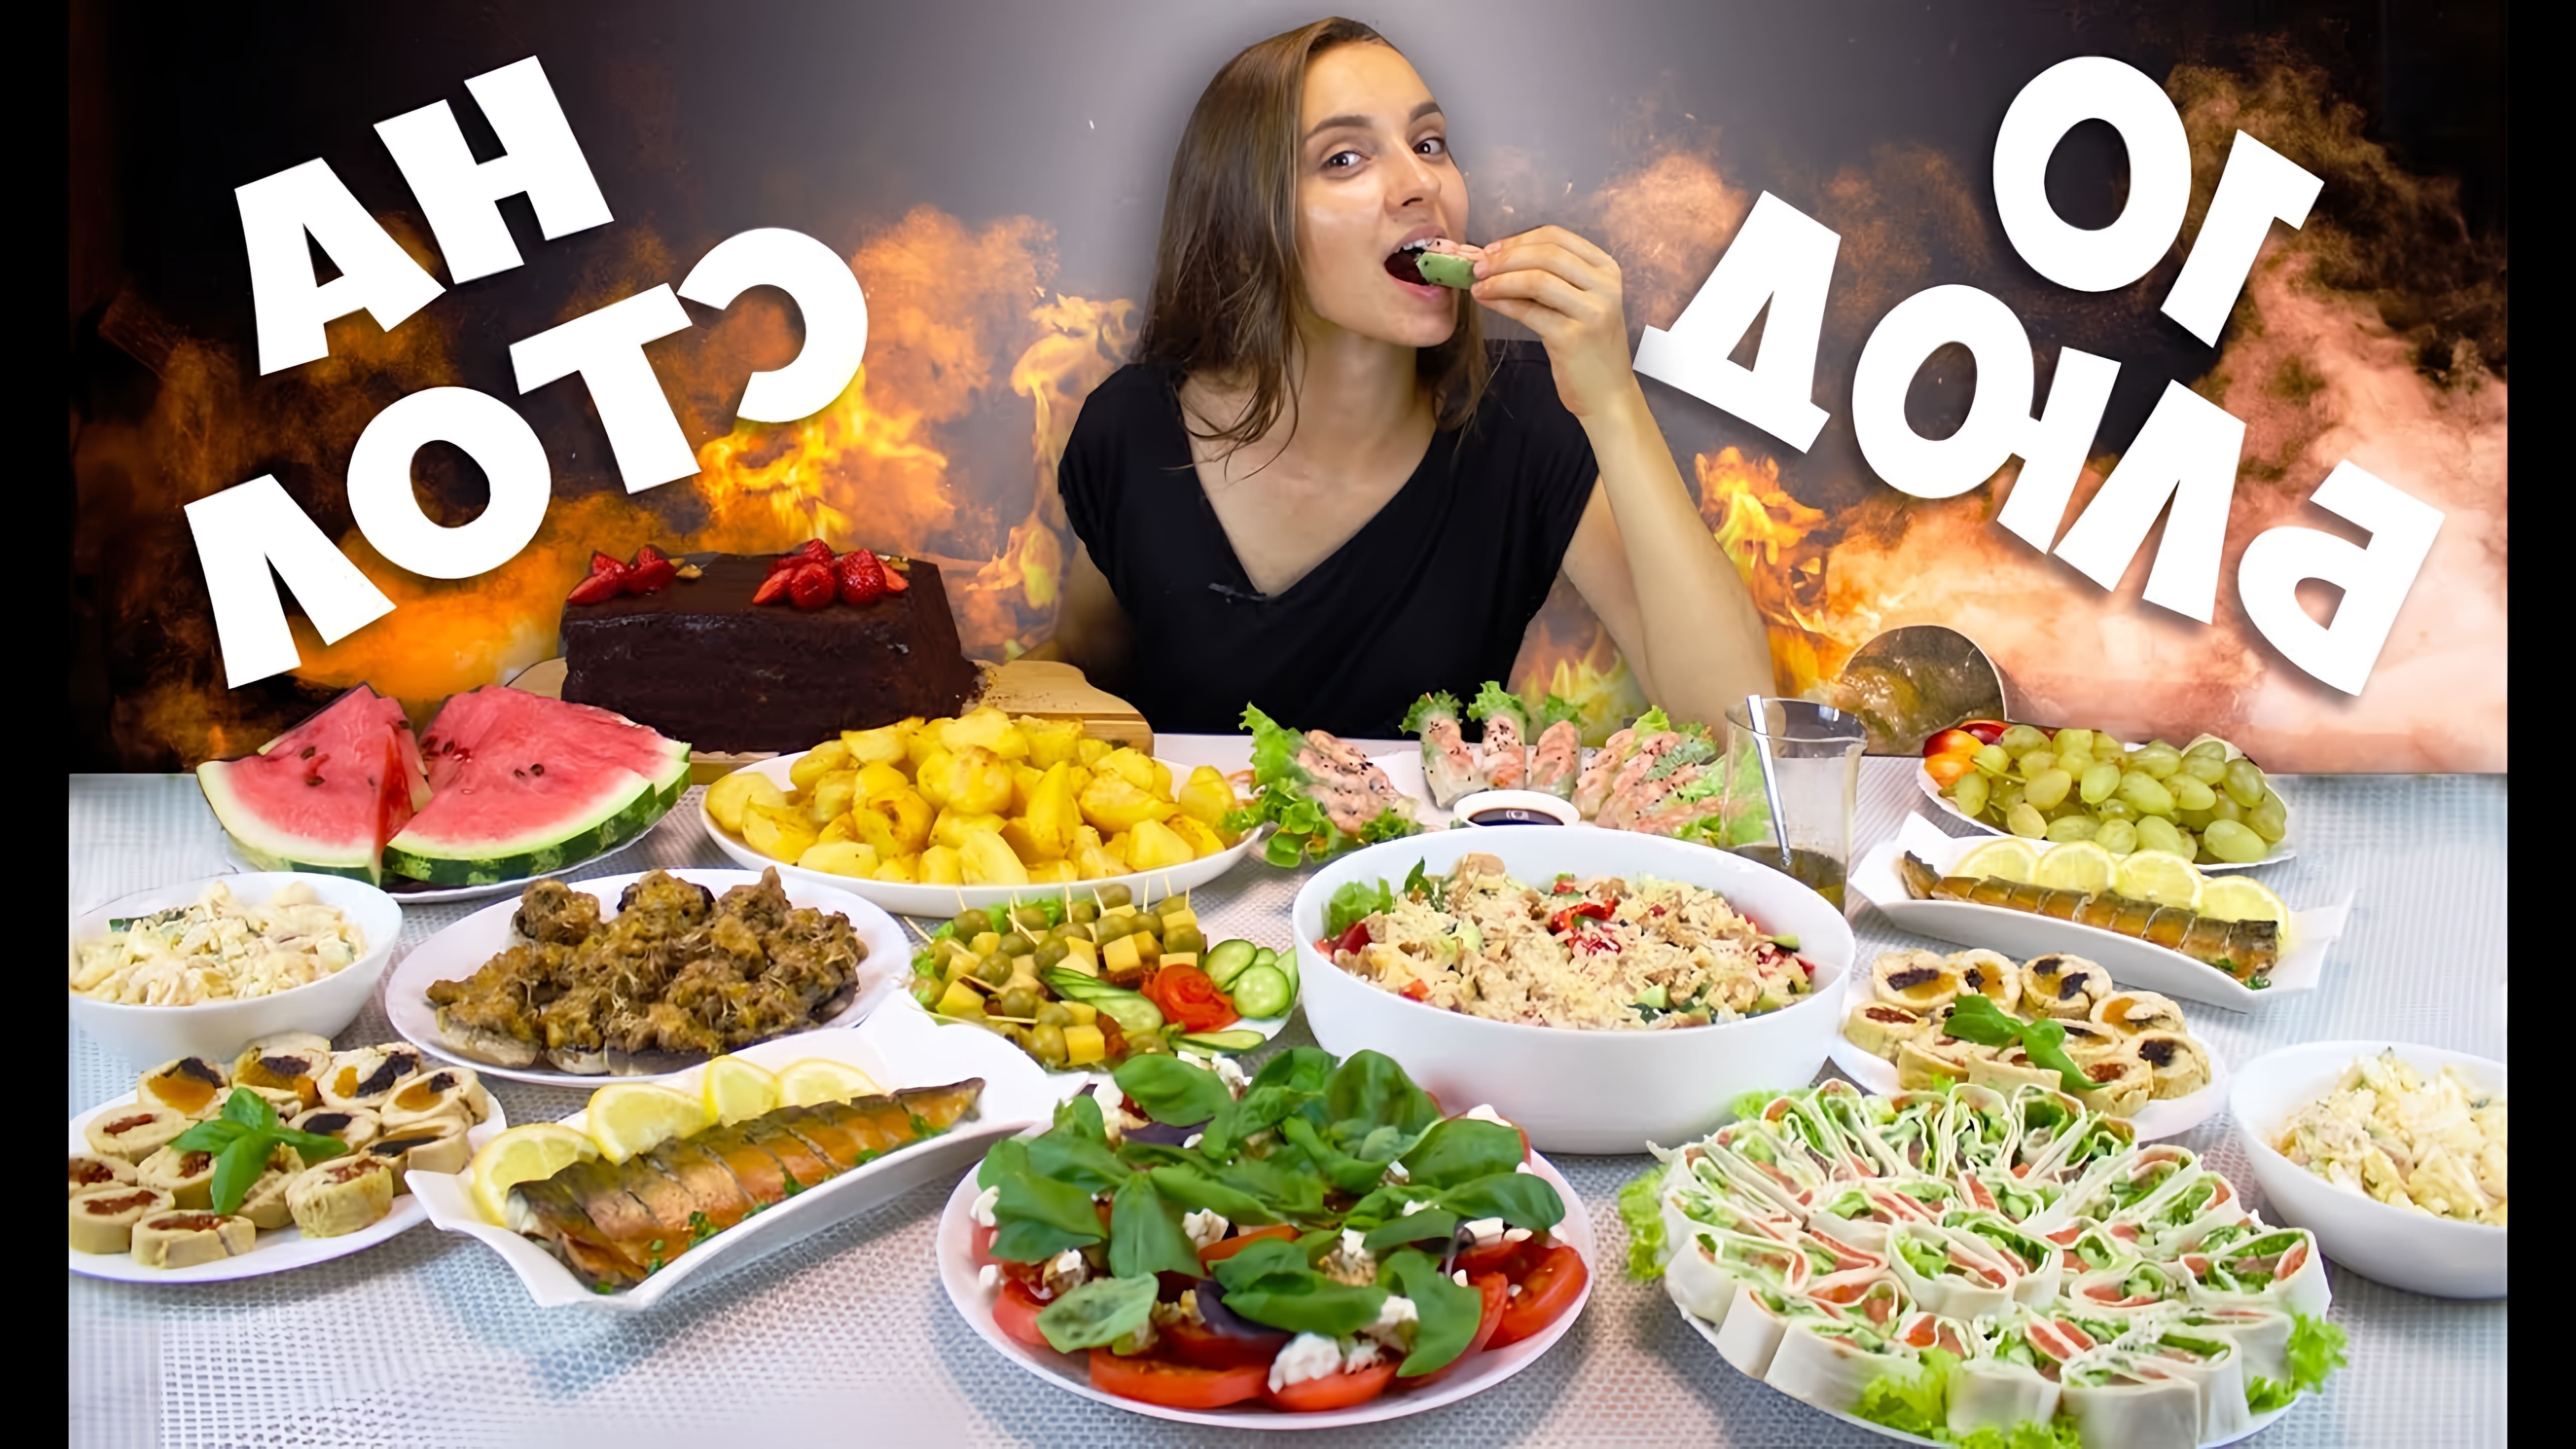 Видео как приготовить 10 блюд для праздничного ужина, включая закуски, салаты и основные блюда